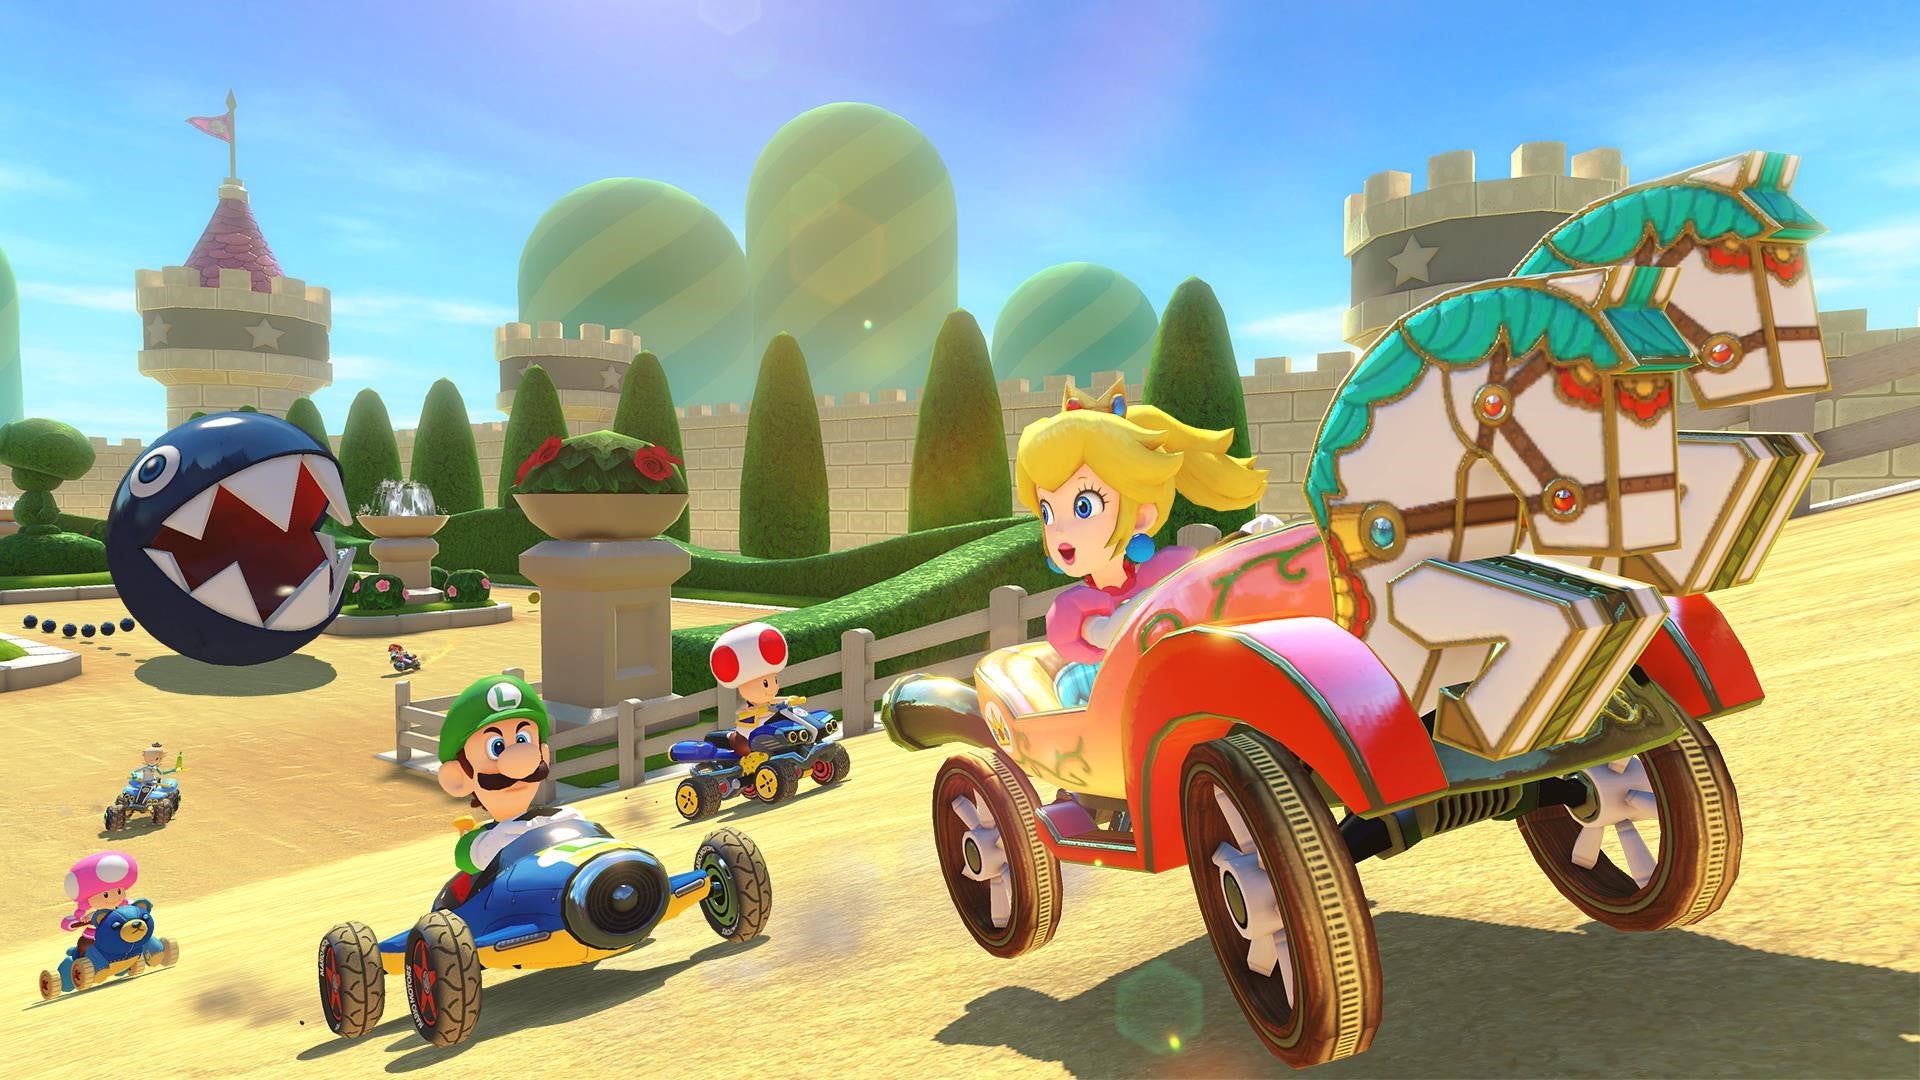 Afbeeldingen van Mario Kart 8 Deluxe Booster Course Pass - Waar en wanneer kun je Mario Kart 8 Deluxe DLC kopen?